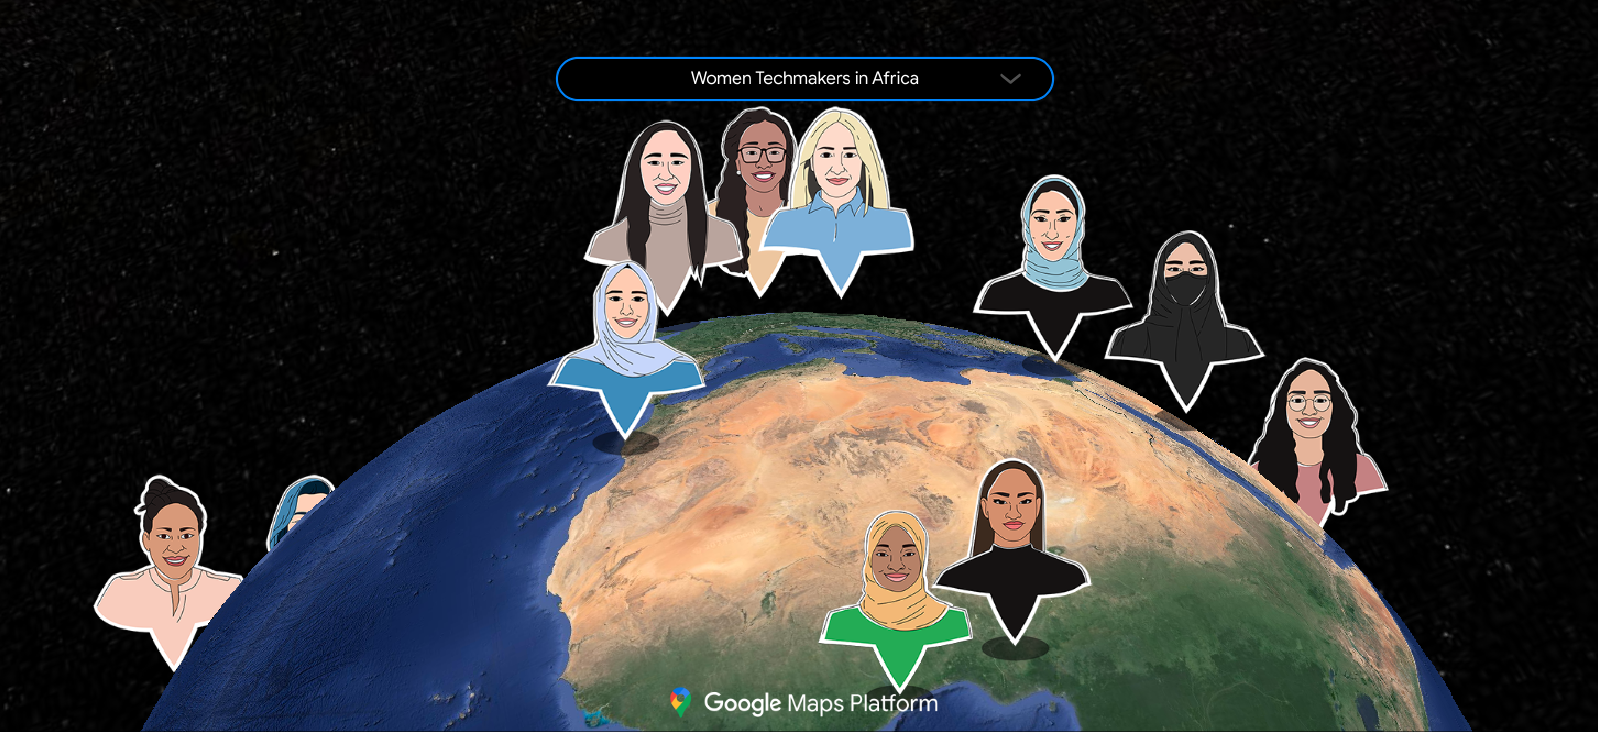 Карта, демонстрирующая глобальную сеть женщин-послов-женщин-технологов, представленную в виде разнообразных групп людей, расположенных на карте в соответствии со своими странами.